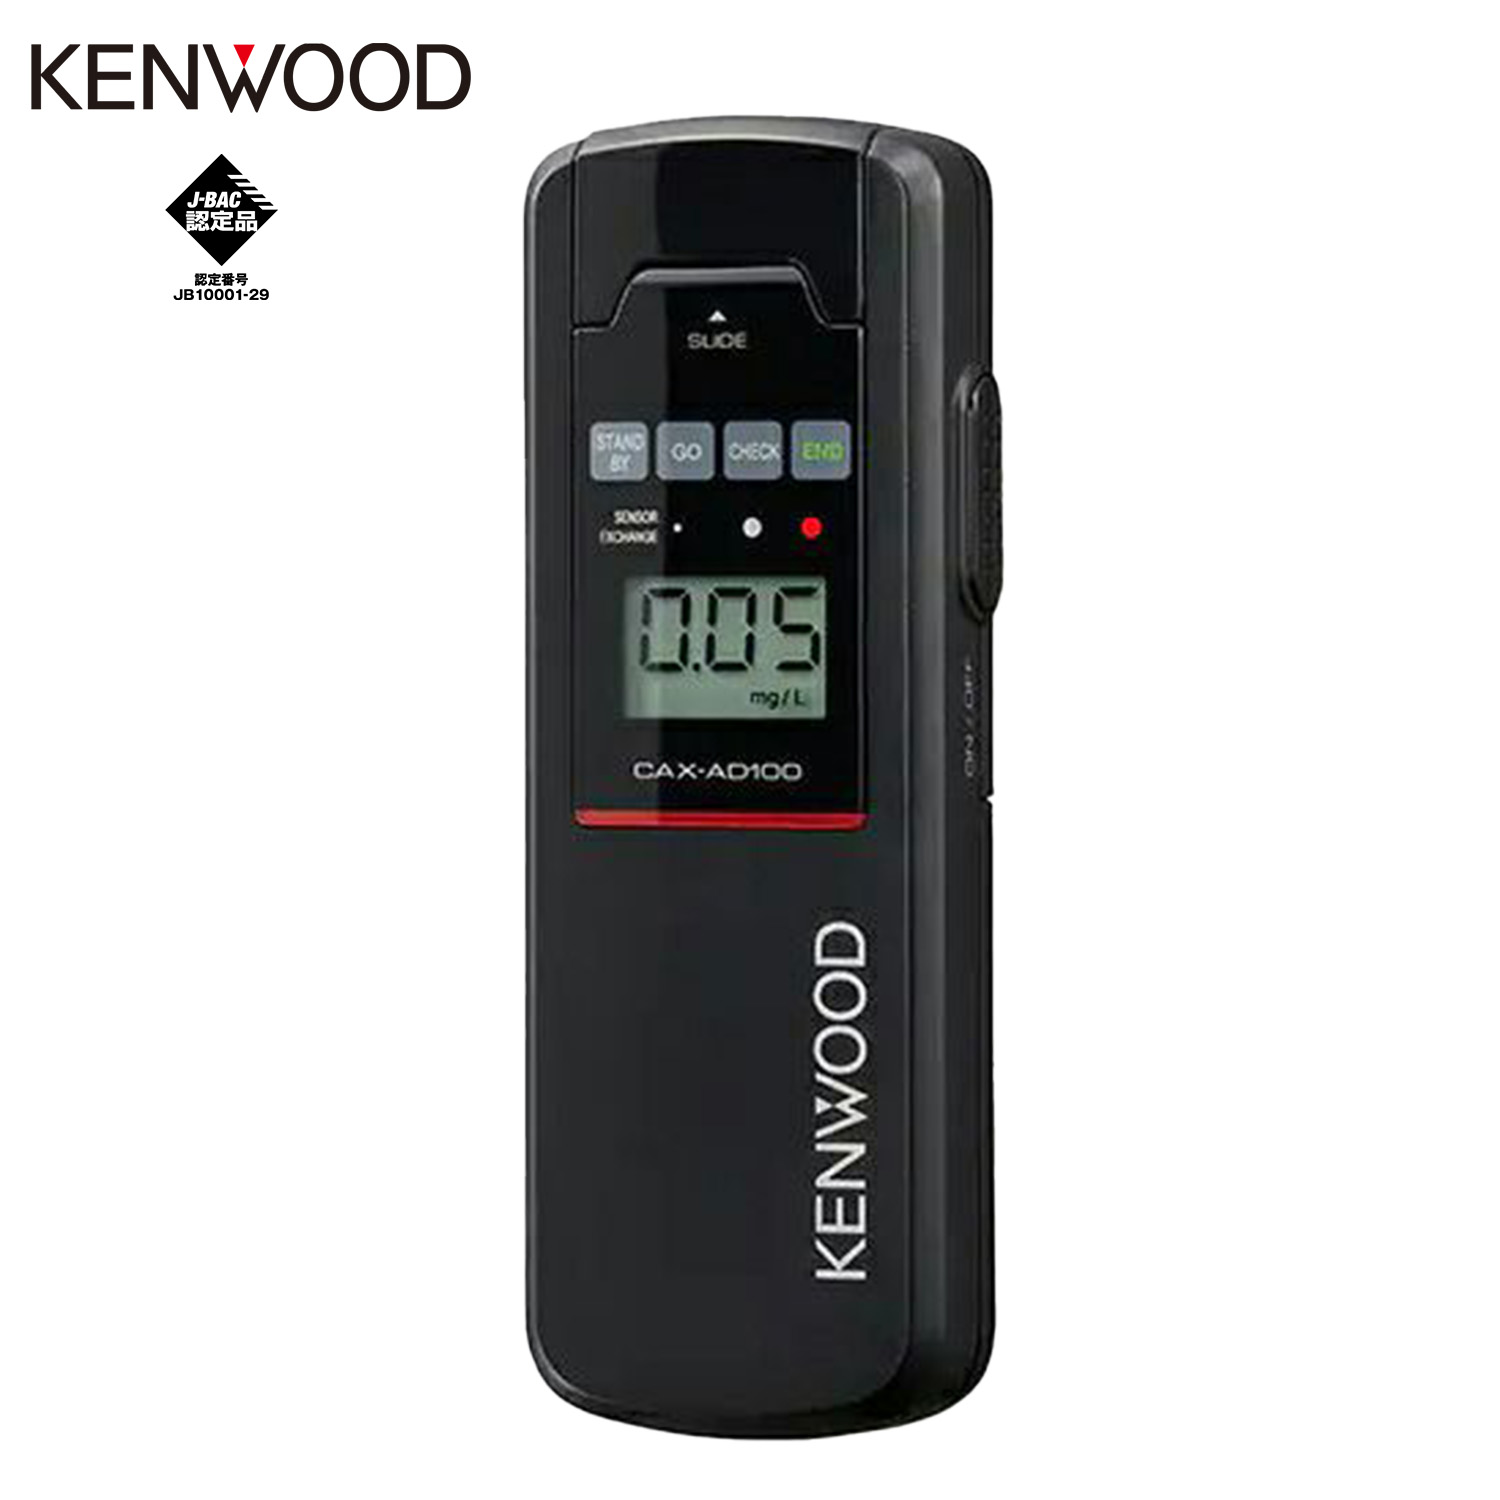 KENWOOD アルコール検知器協議会認定品 アルコール チェッカー CAX-AD100 日本製 安心 安全 高精度 高感度 高品質 センサー ブラック ケンウッド 05 